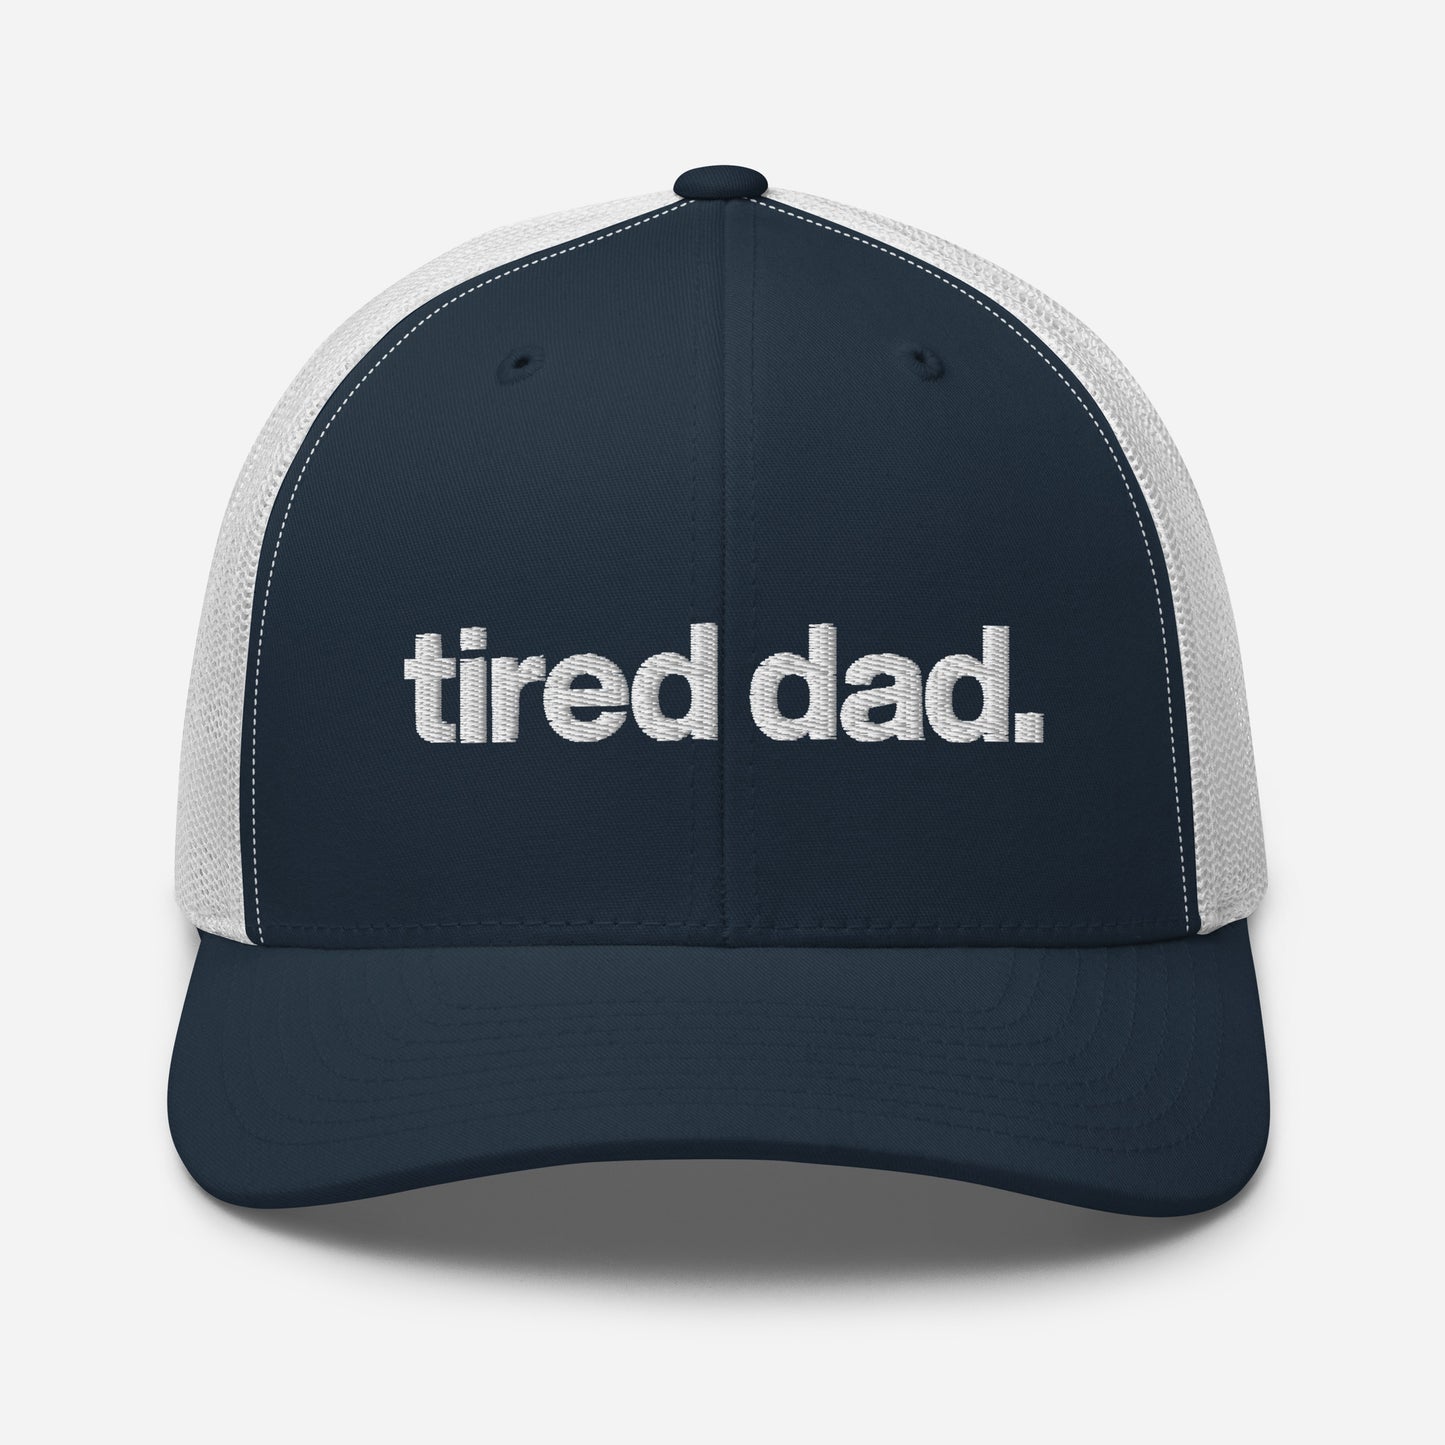 tired dad. trucker hat